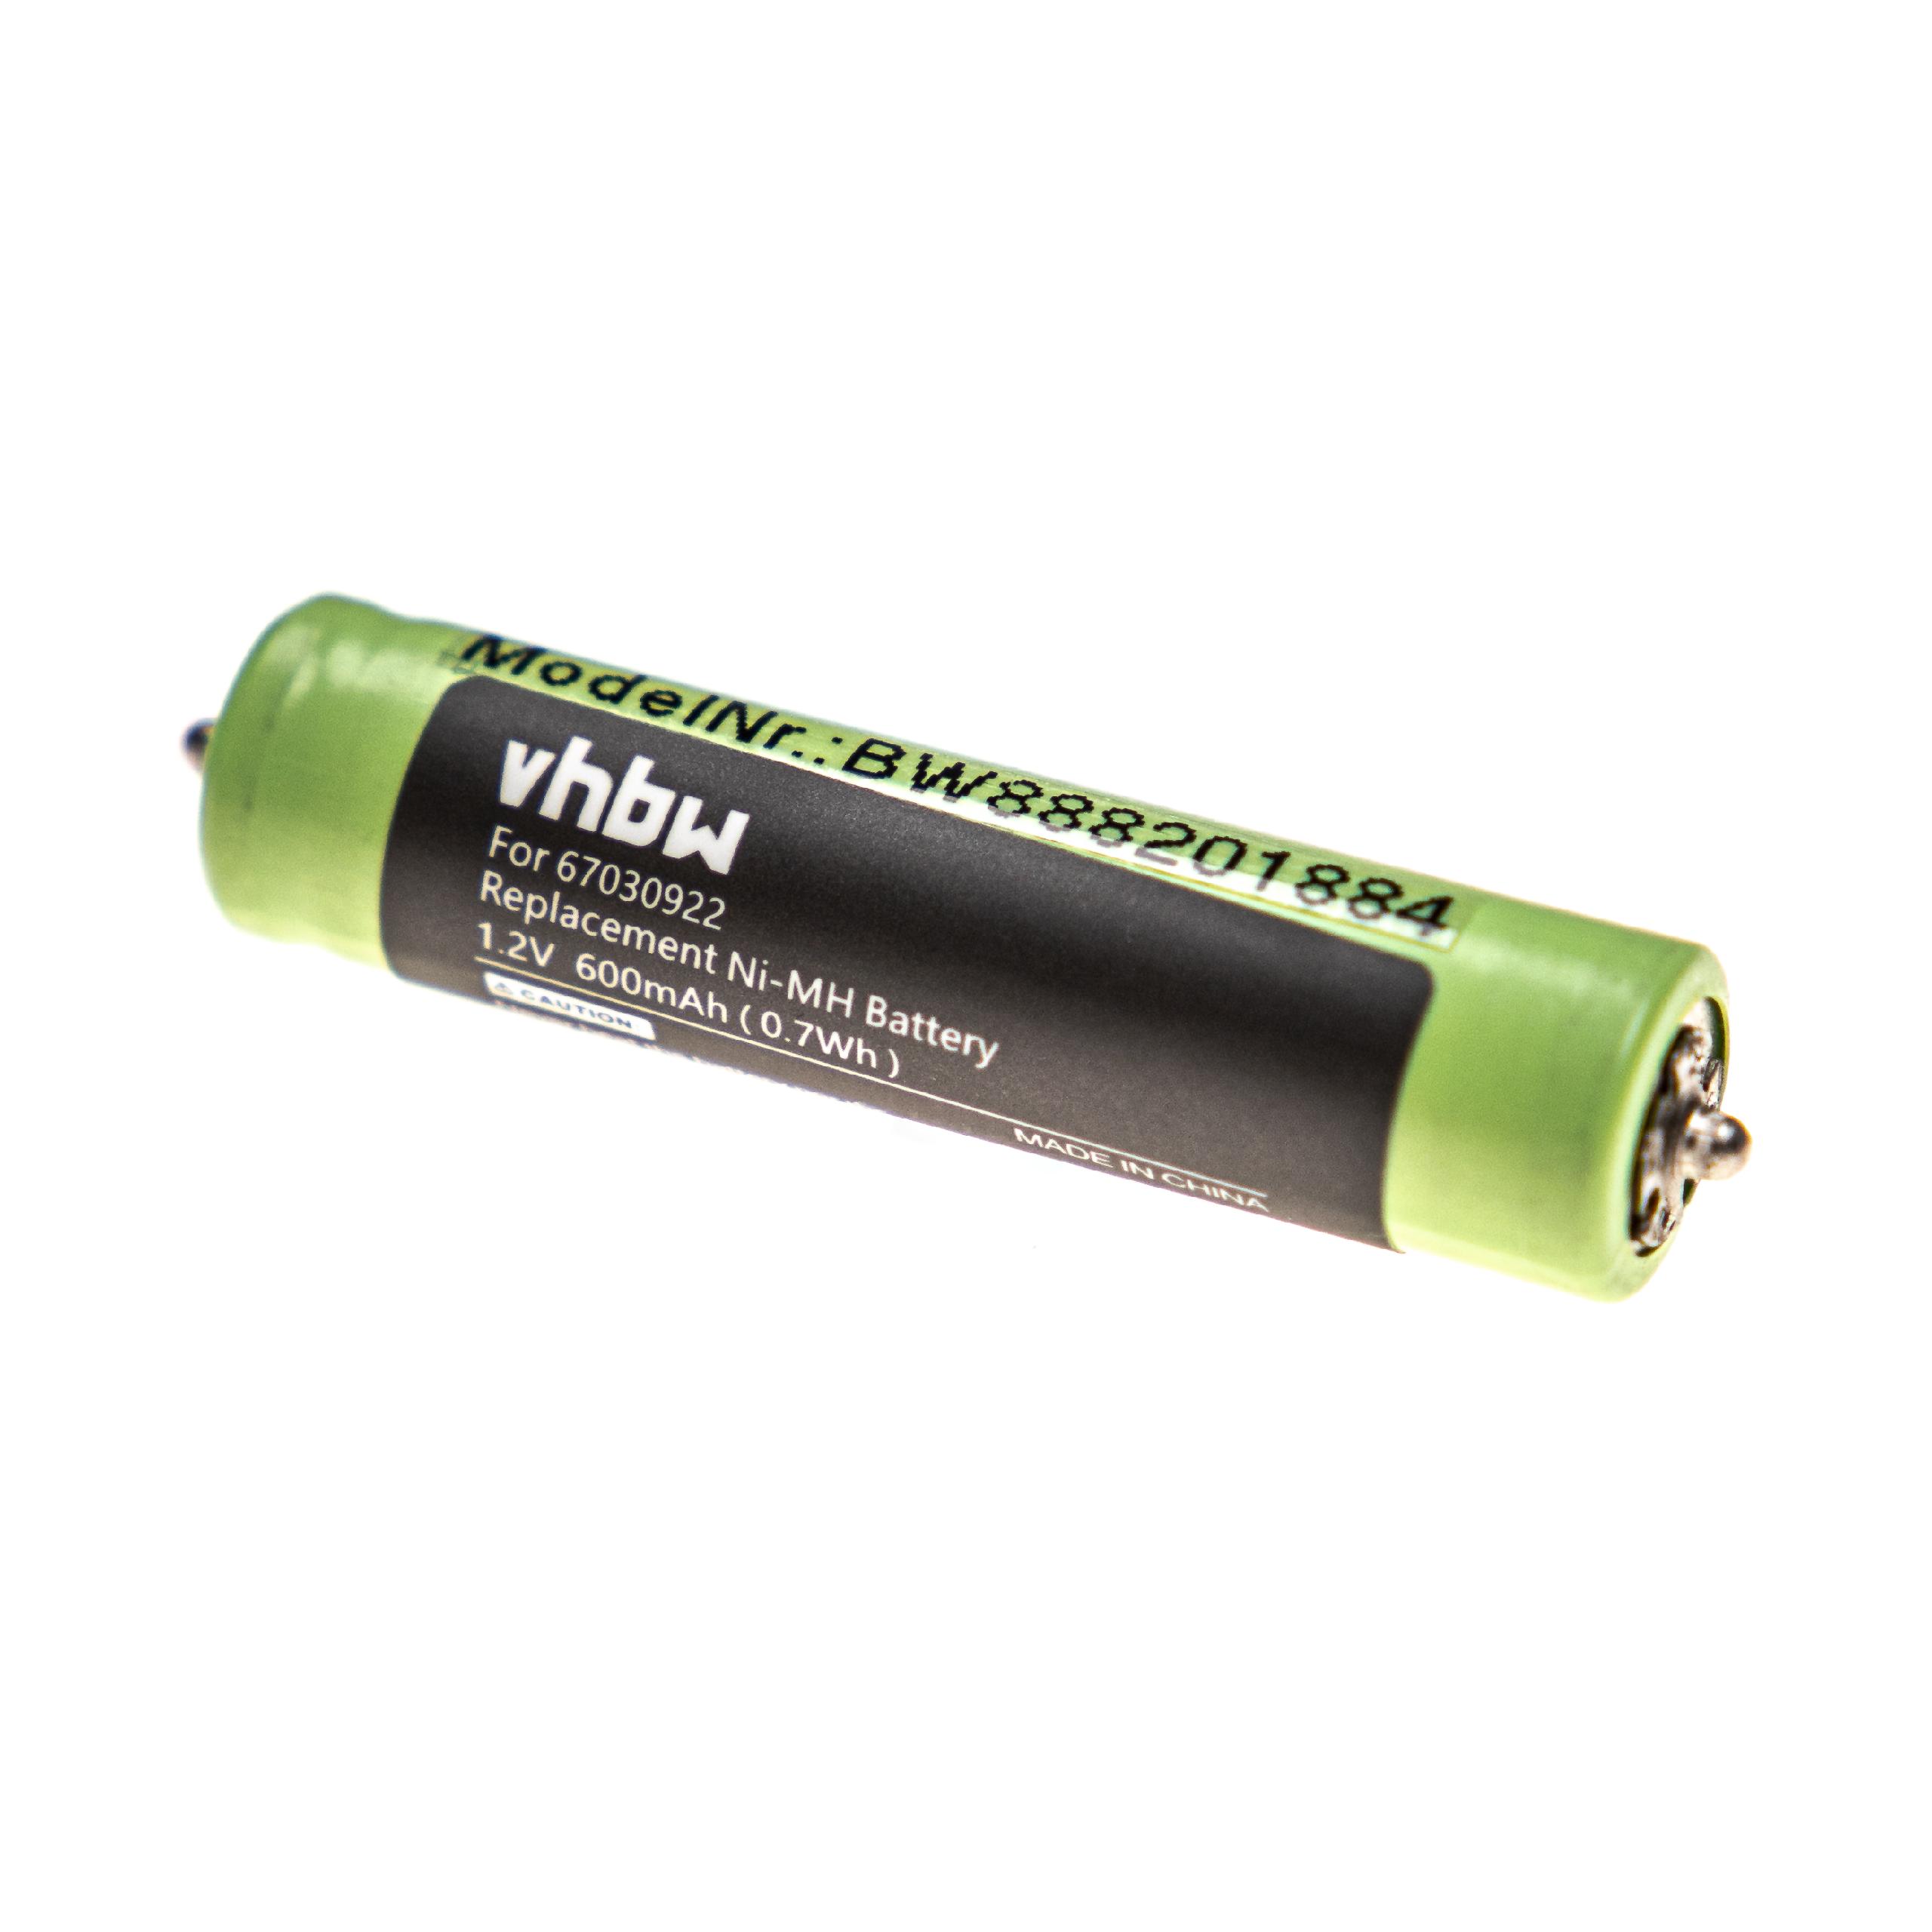 Batterie remplace Braun 7030922, 67030922, 1HR-4UC, 67030368 pour rasoir électrique - 600mAh 1,2V NiMH